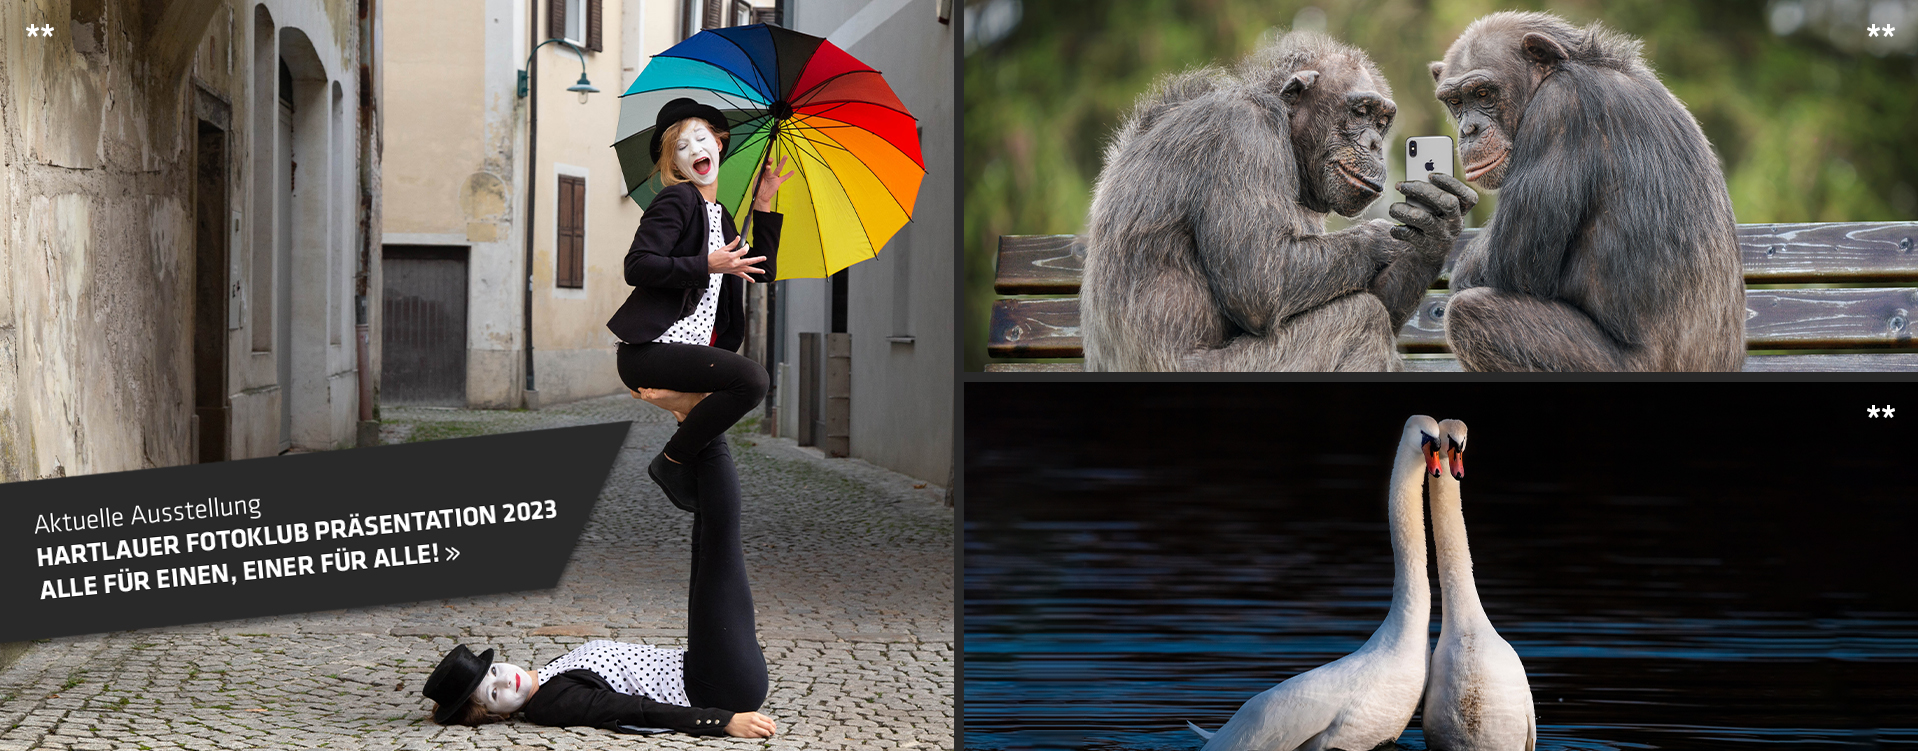 Zwei Affen mit auf einer Parkband, zwei Schwäne und zwei Frauen mit einem buntem Regenschirm.